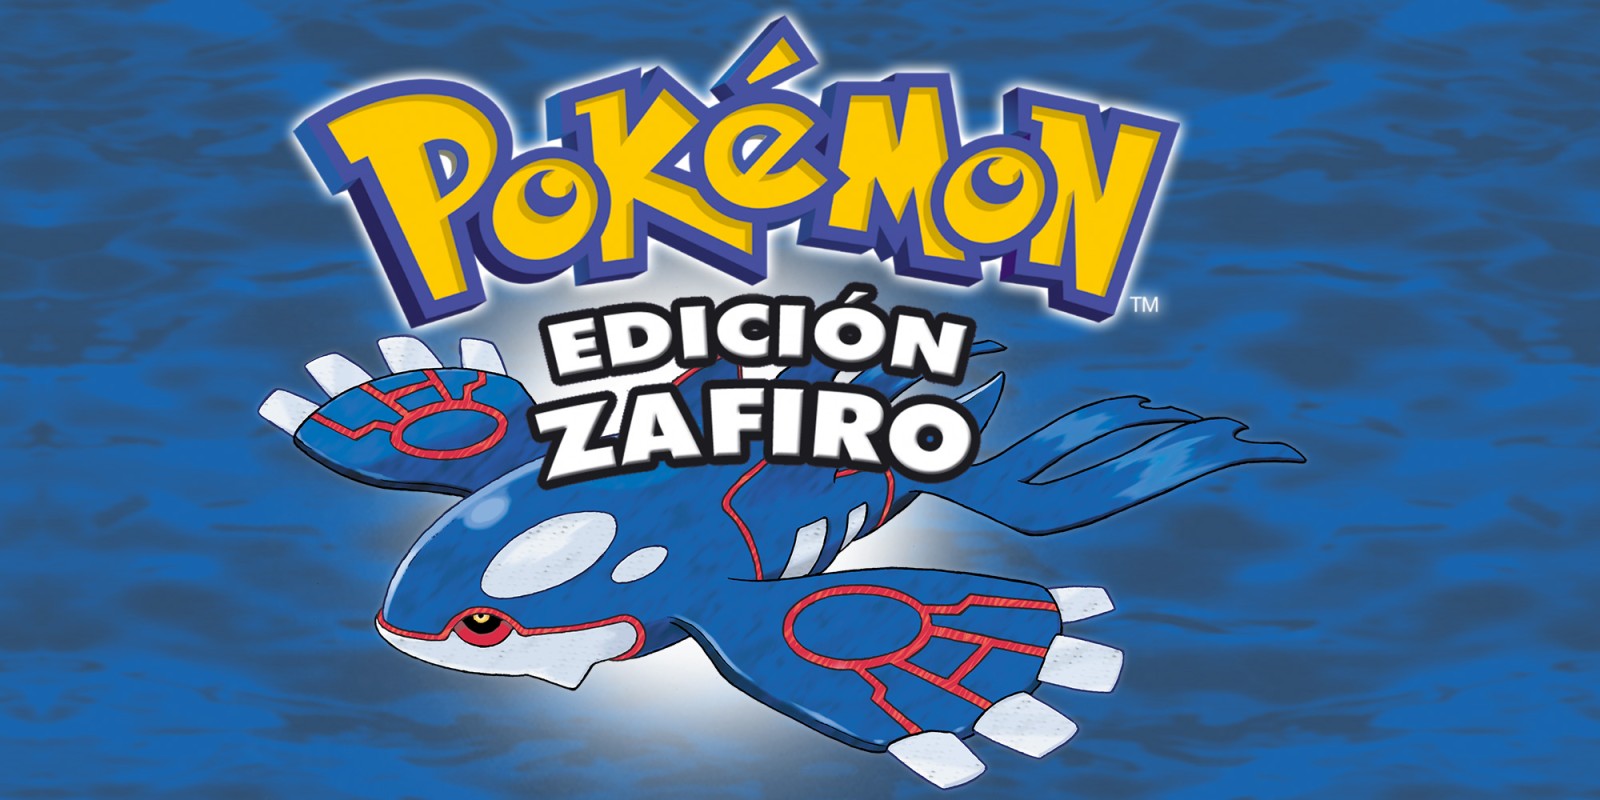 Pokémon Edición Zafiro